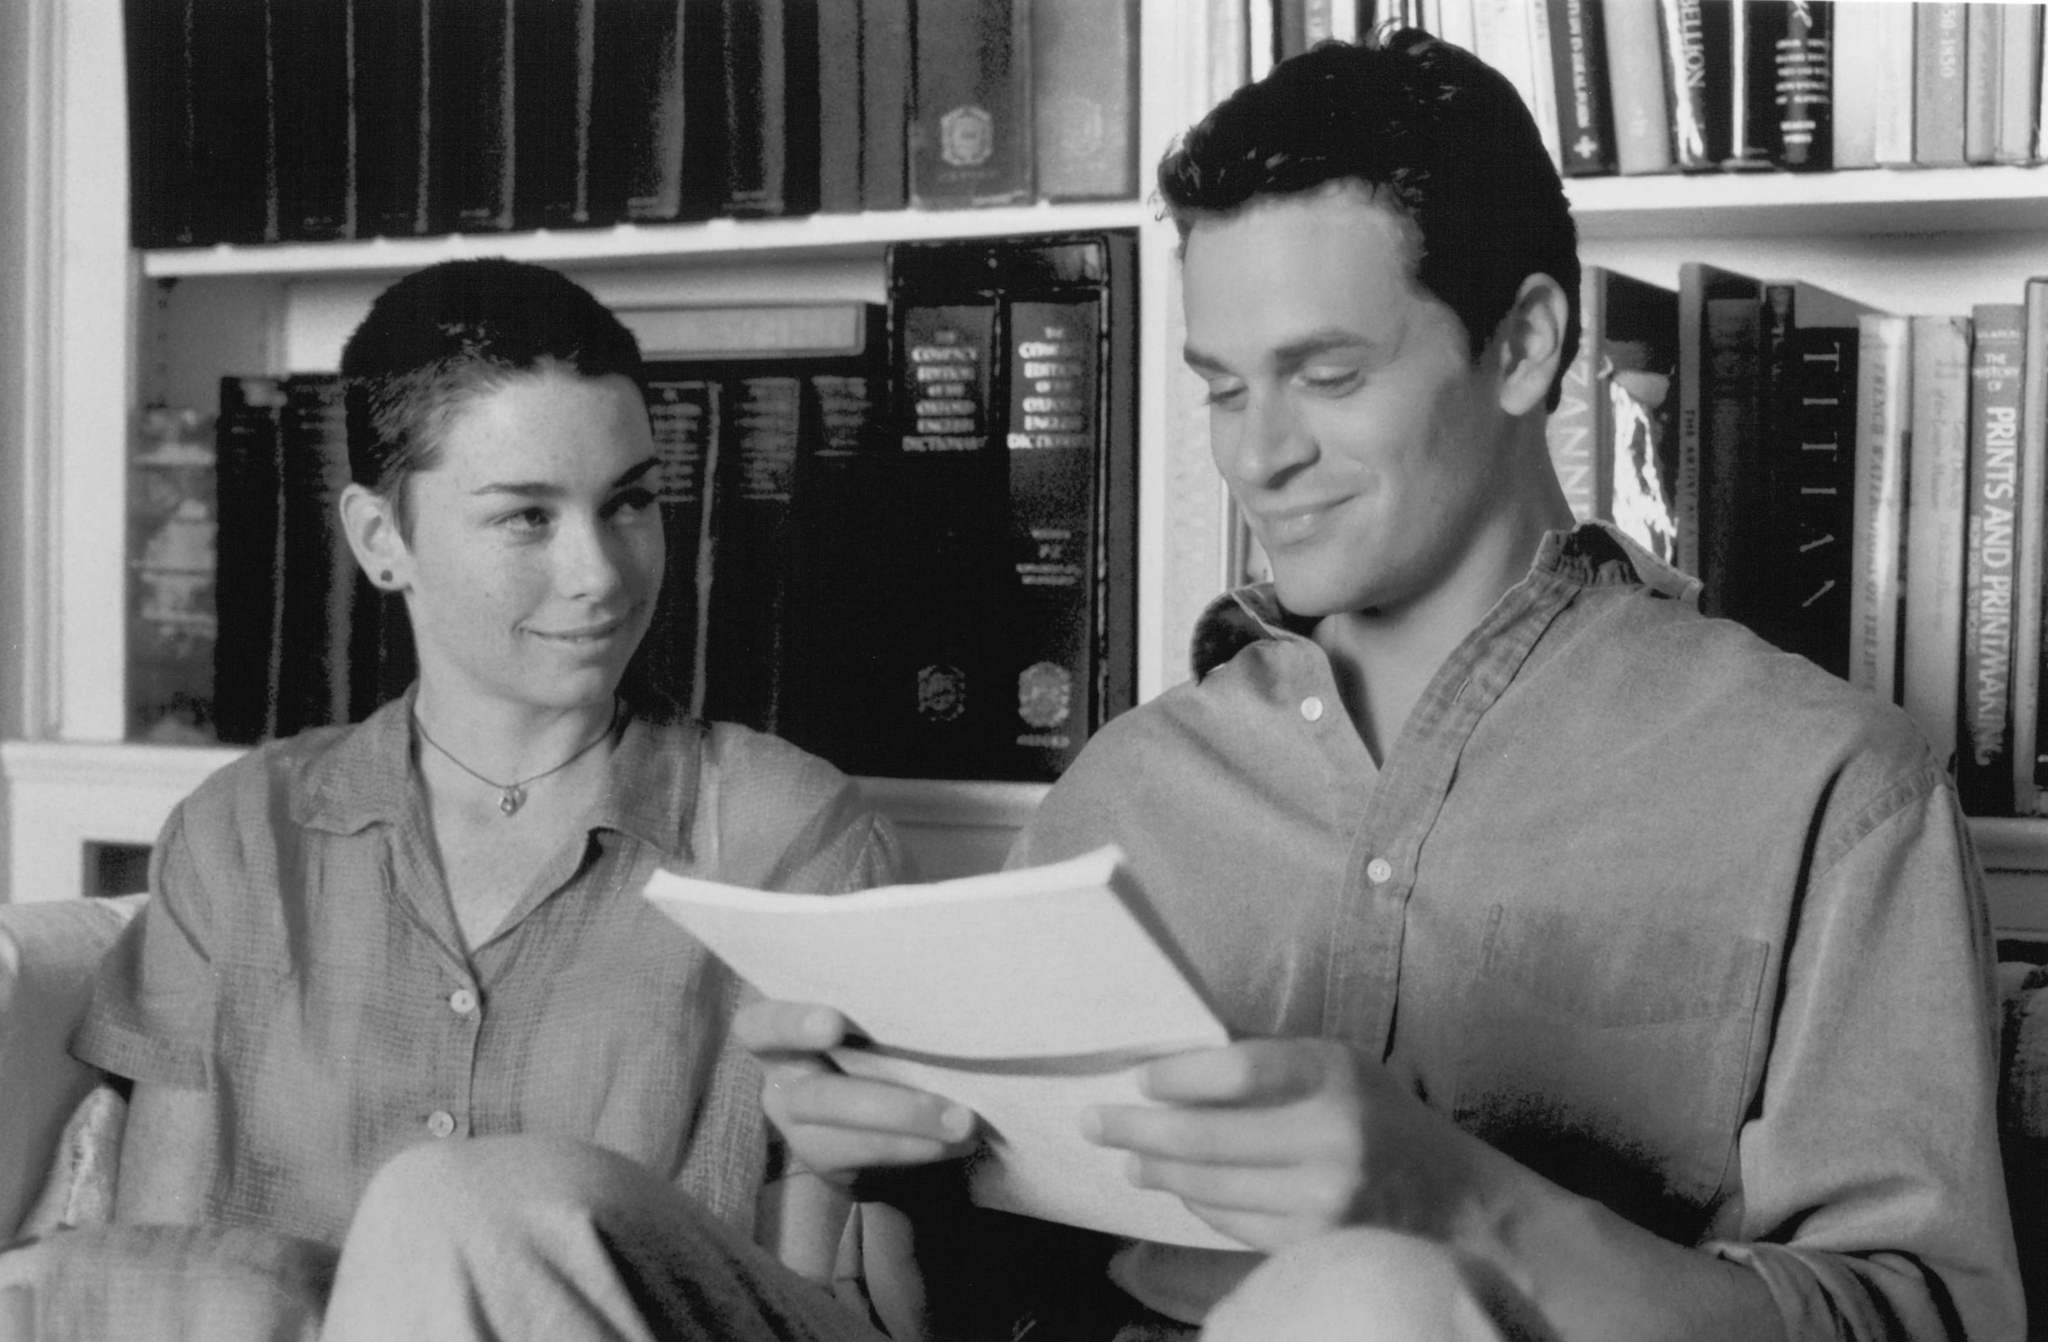 Still of Julianne Nicholson and Tom Everett Scott in The Love Letter (1999)